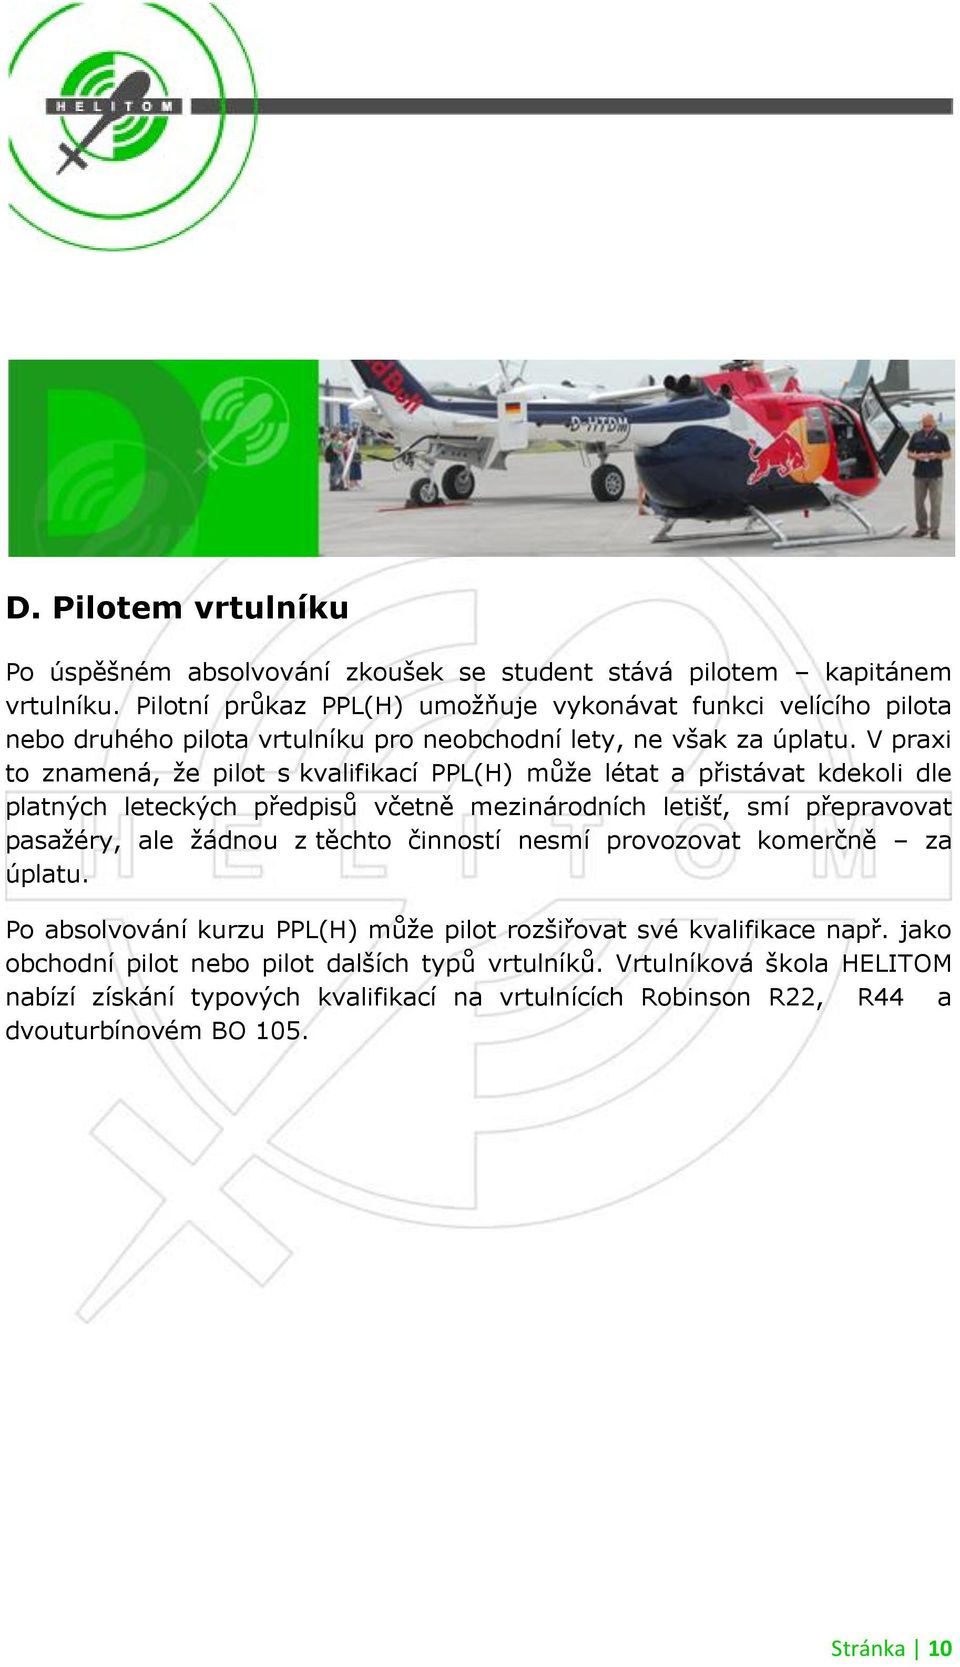 V praxi to znamená, ţe pilot s kvalifikací PPL(H) můţe létat a přistávat kdekoli dle platných leteckých předpisů včetně mezinárodních letišť, smí přepravovat pasaţéry, ale ţádnou z